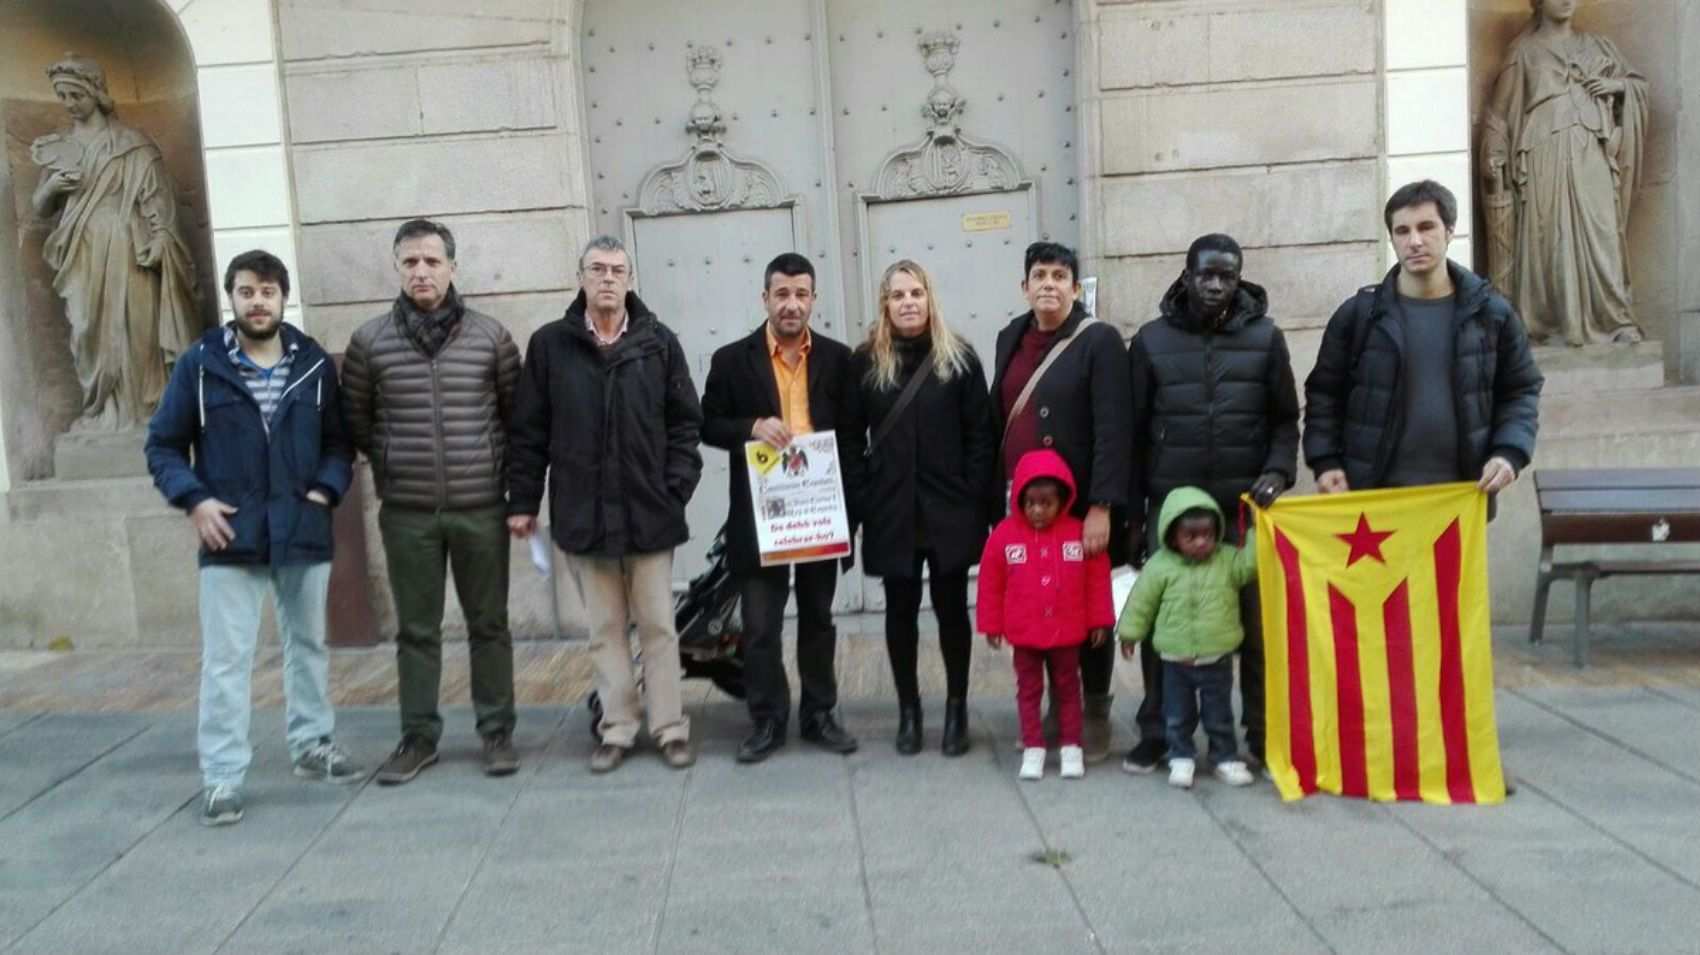 Regidors de Mataró troben la porta de l'Ajuntament tancada